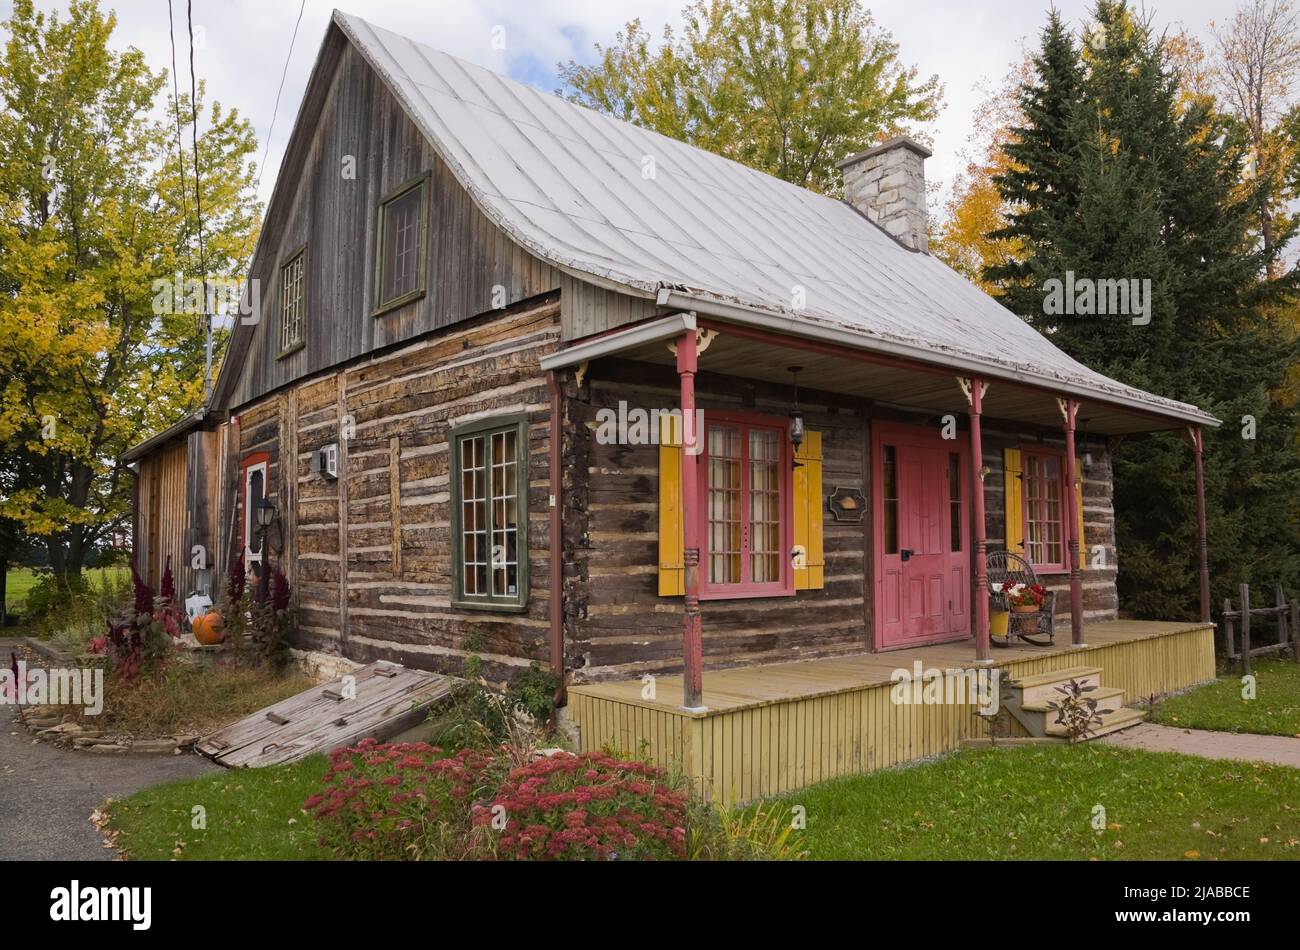 Antigua casa de madera estilo cabaña de alrededor de 1825 Canadiana con techo de chapa galvanizada en otoño. Foto de stock